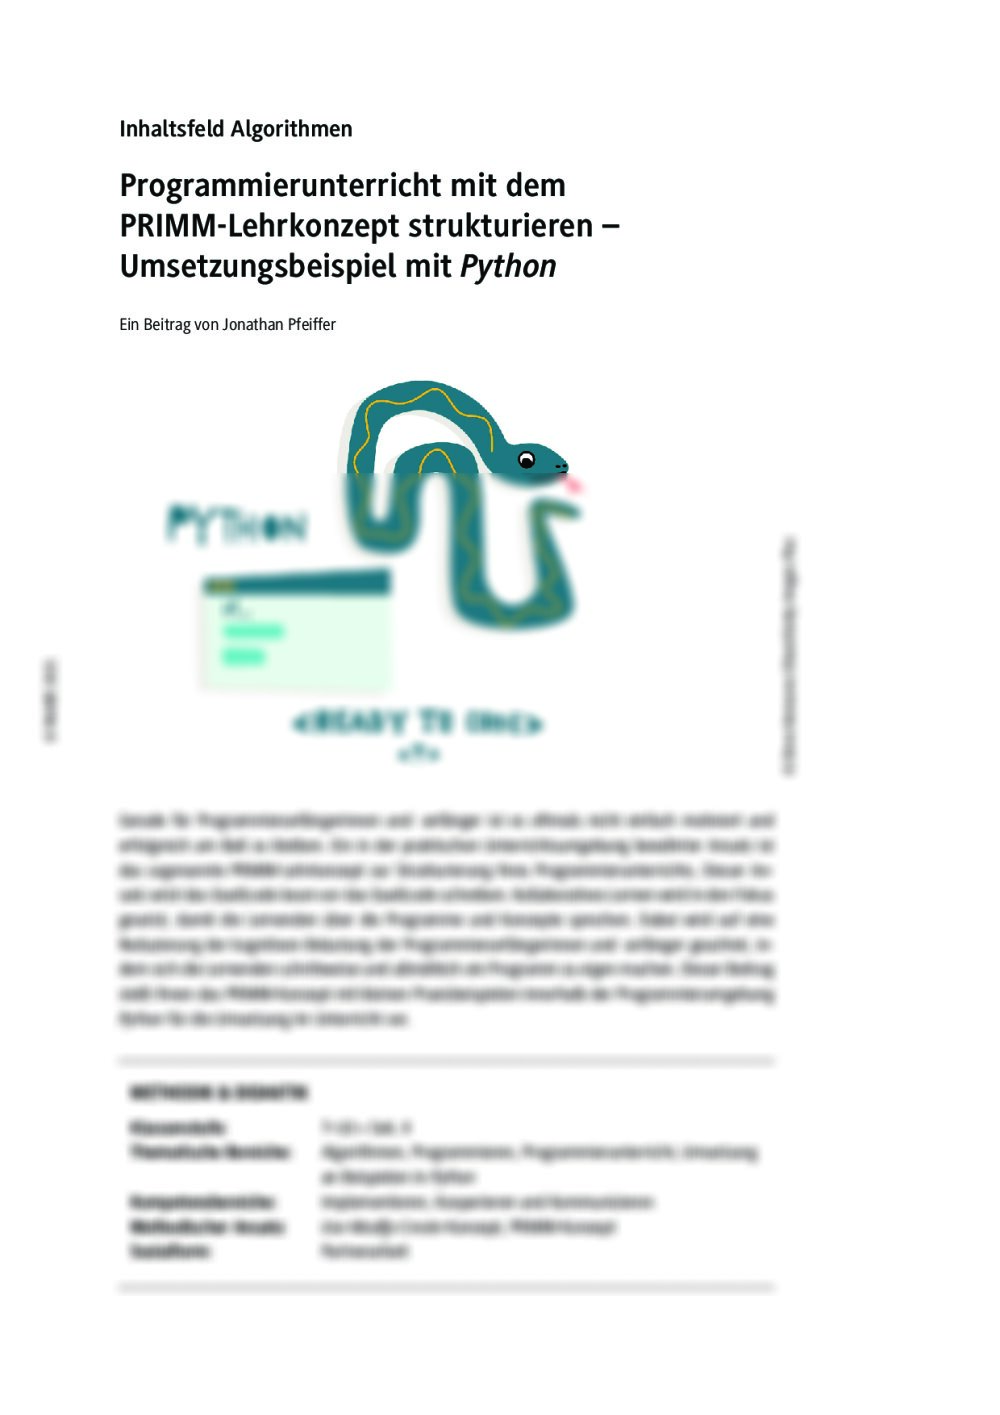 Das PRIMM-Lehrkonzept umgesetzt mit Python - Seite 1